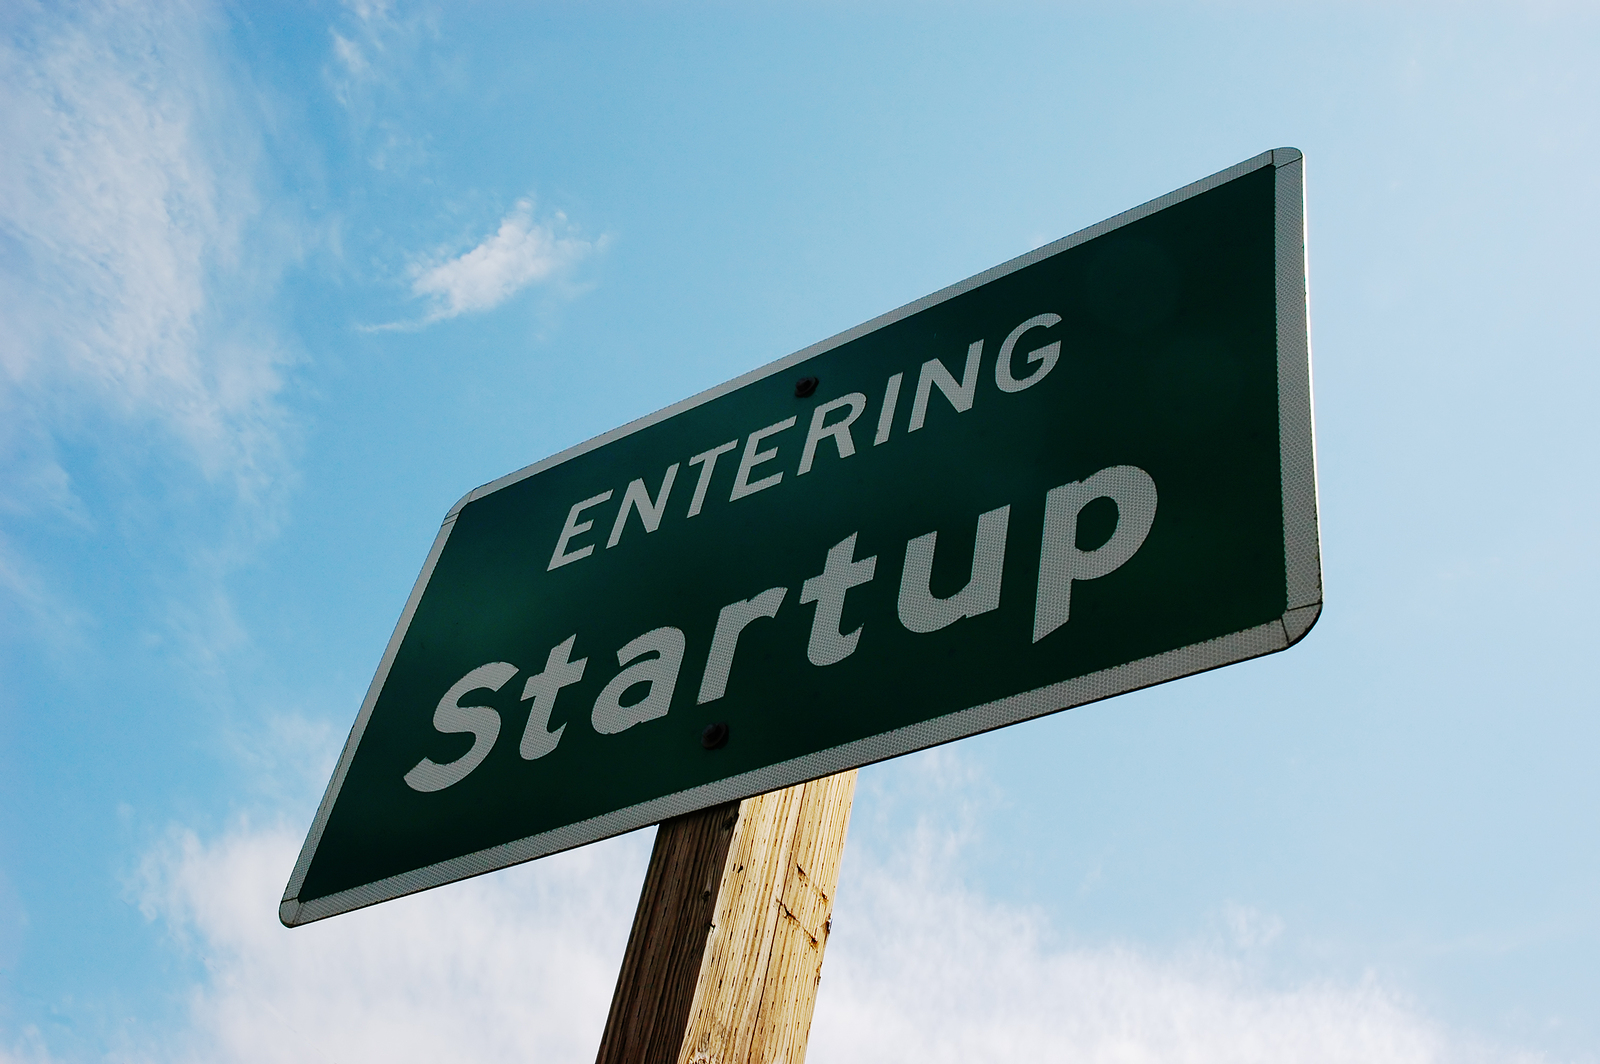 Vrei să înfiinţezi un start-up? Ia mai gândeşte-te